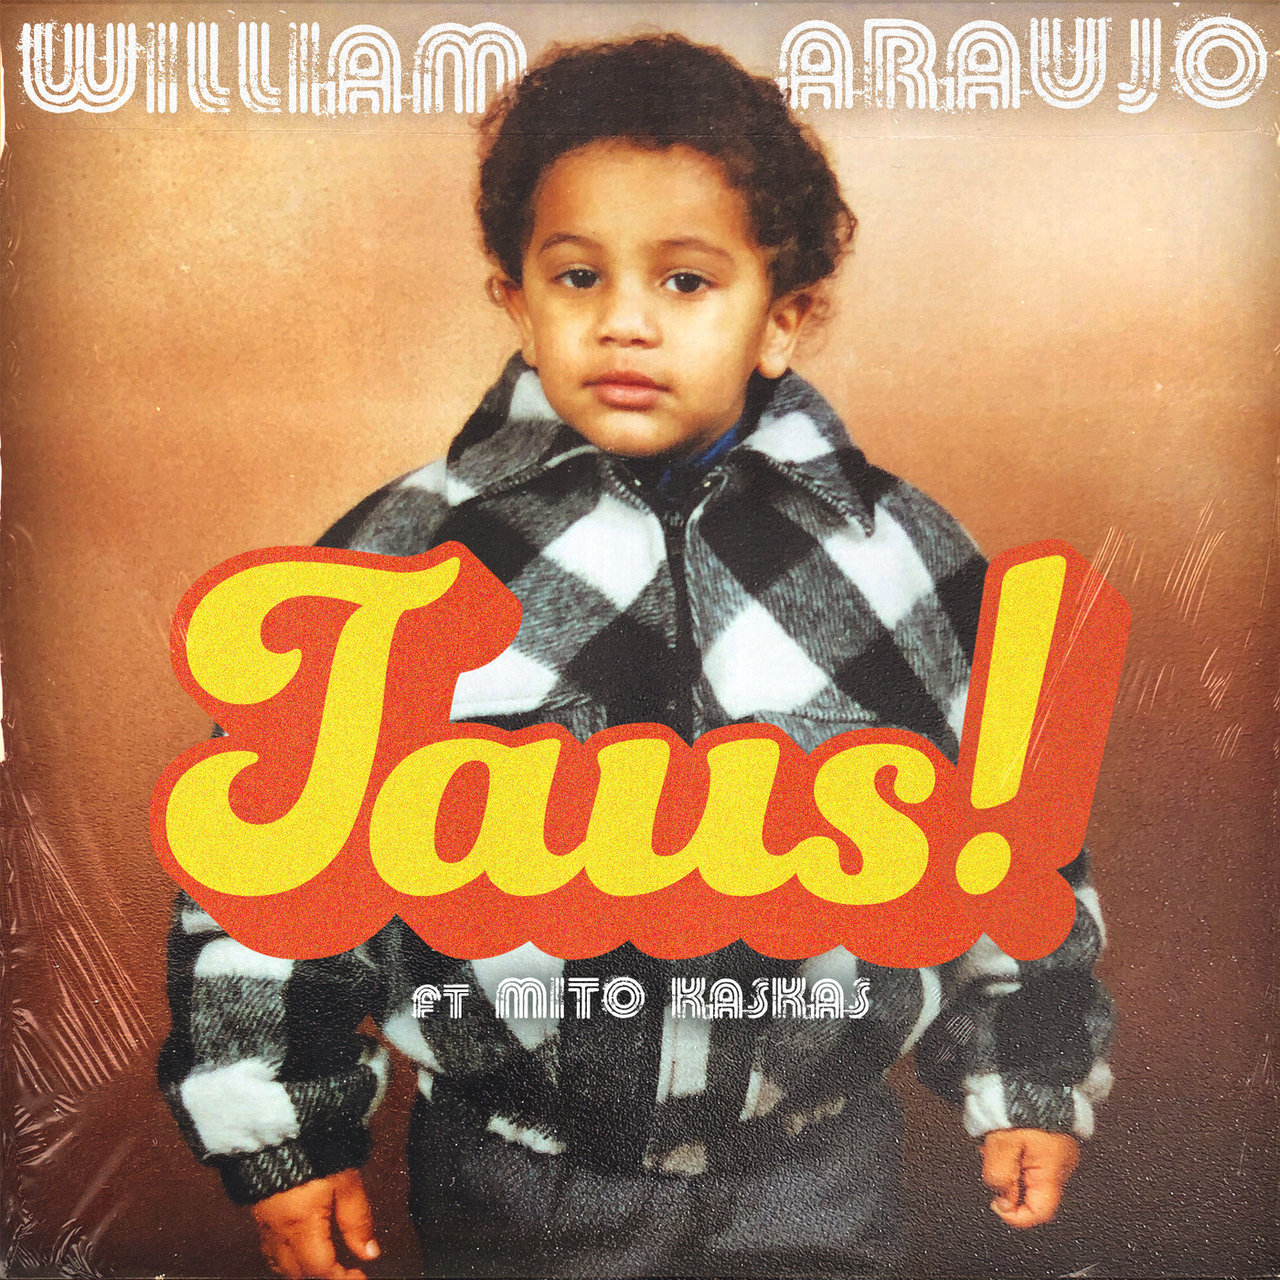 William Araujo - Taus (ft. Mito Kaskas) (Cover)